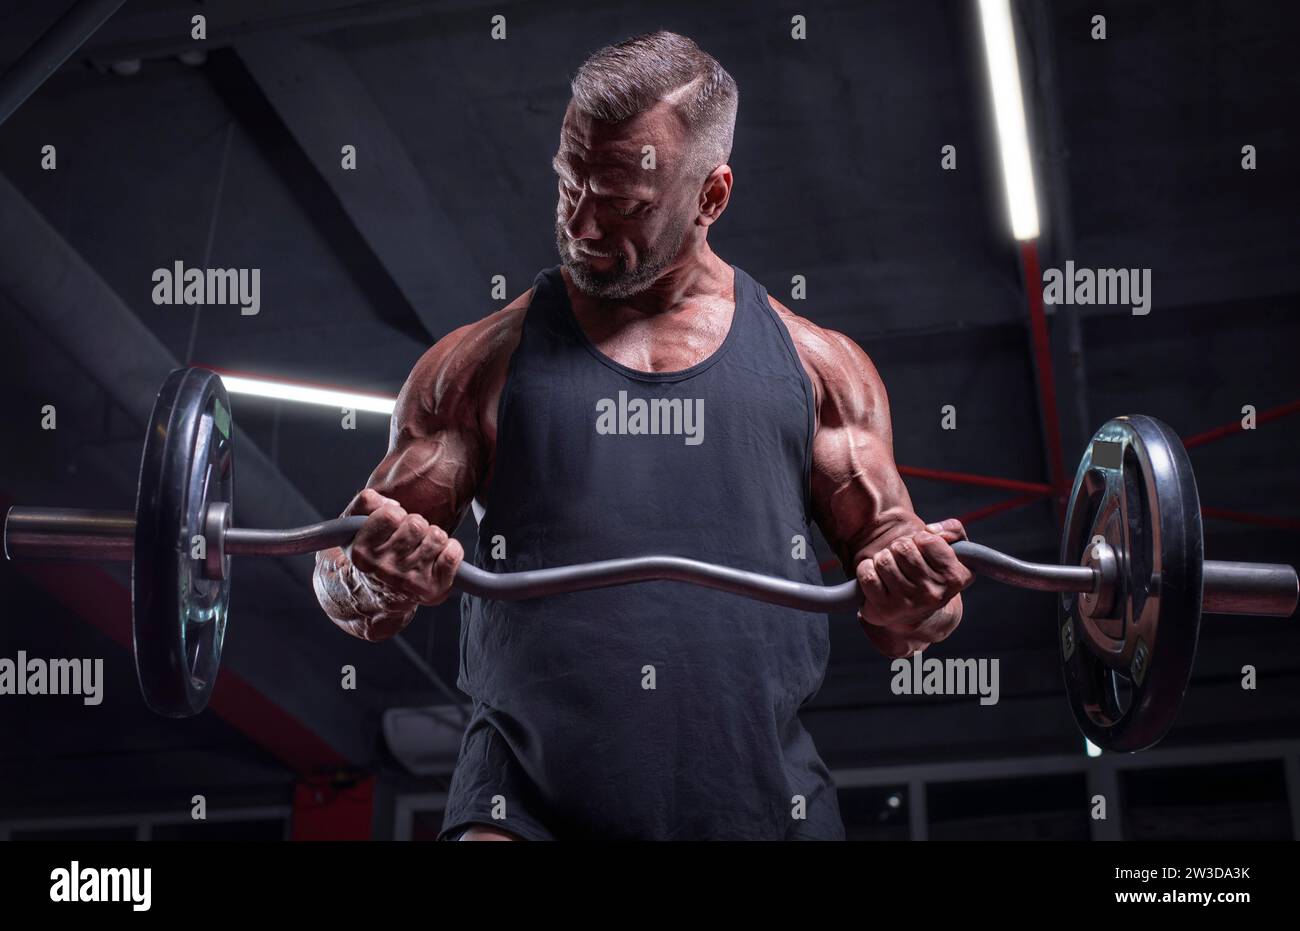 Bild eines starken Athleten, der eine Langhantel in einem Fitnessstudio hebt. Bizepspumpen. Fitness- und Bodybuilding-Konzept Stockfoto